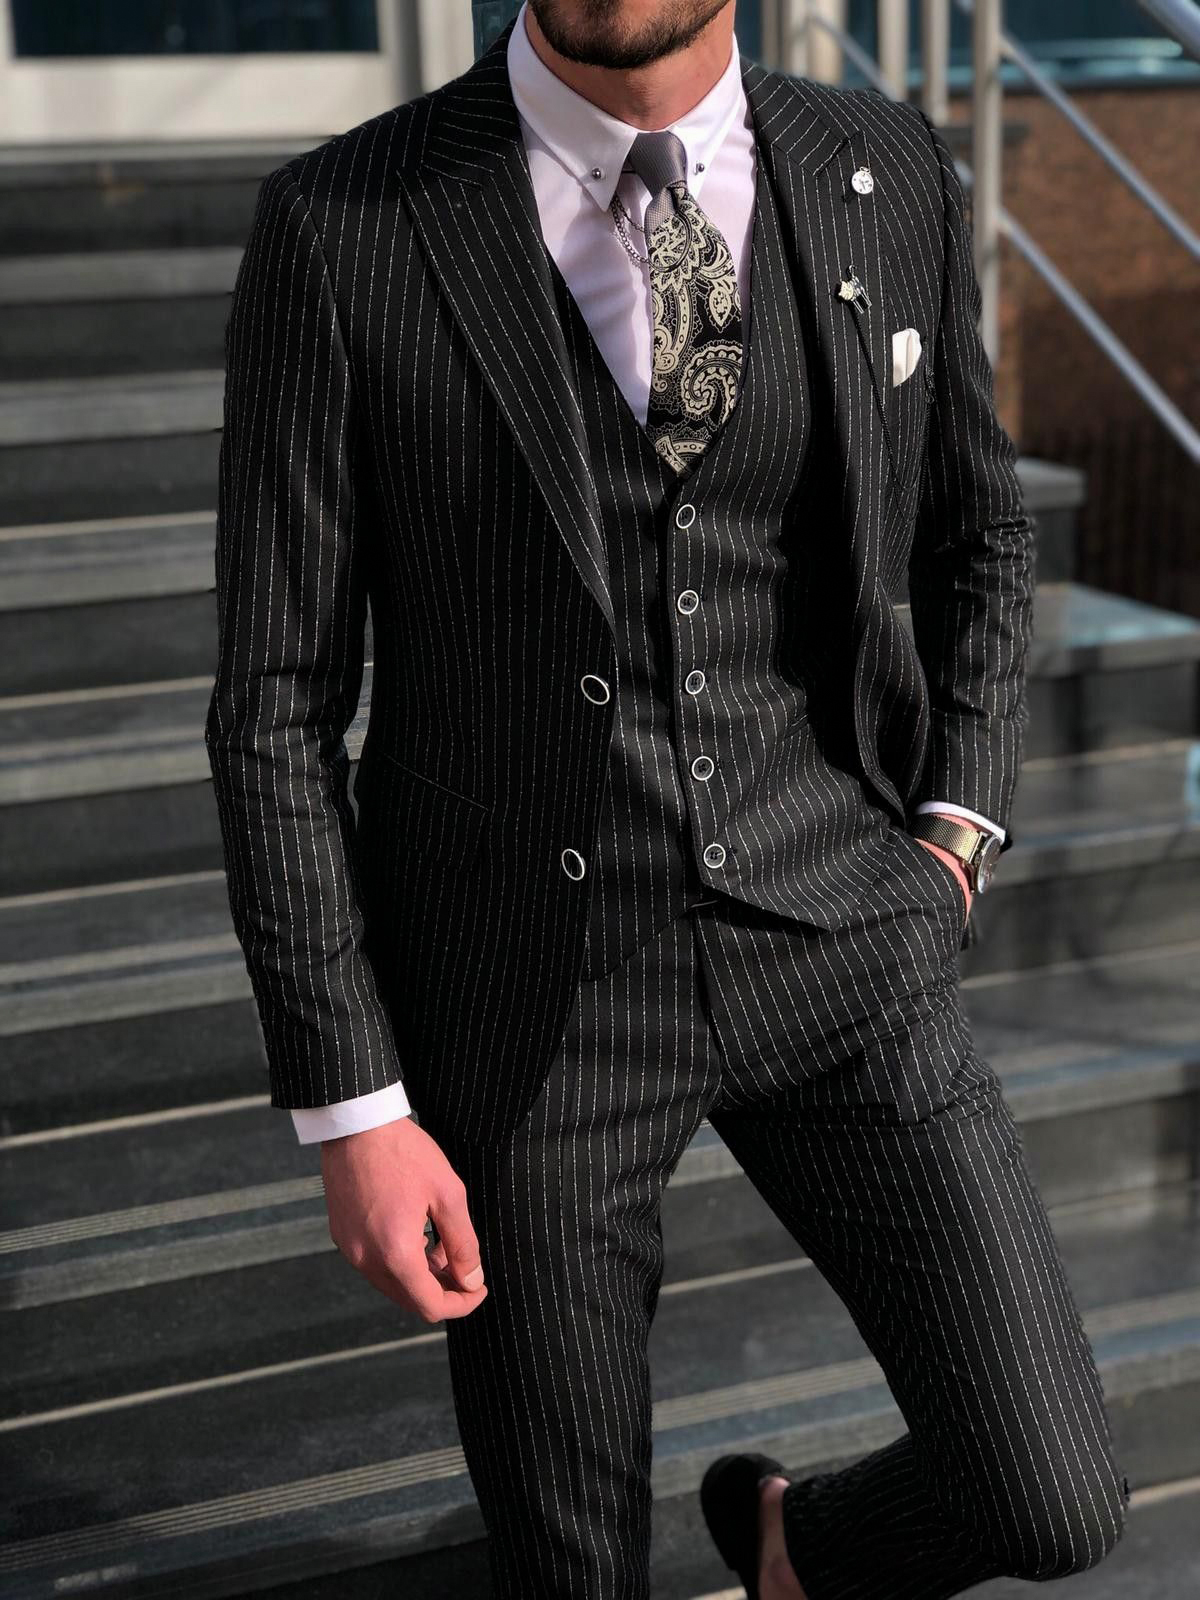 Best Ways to Wear a Men's Pinstripe Suit Suits Expert